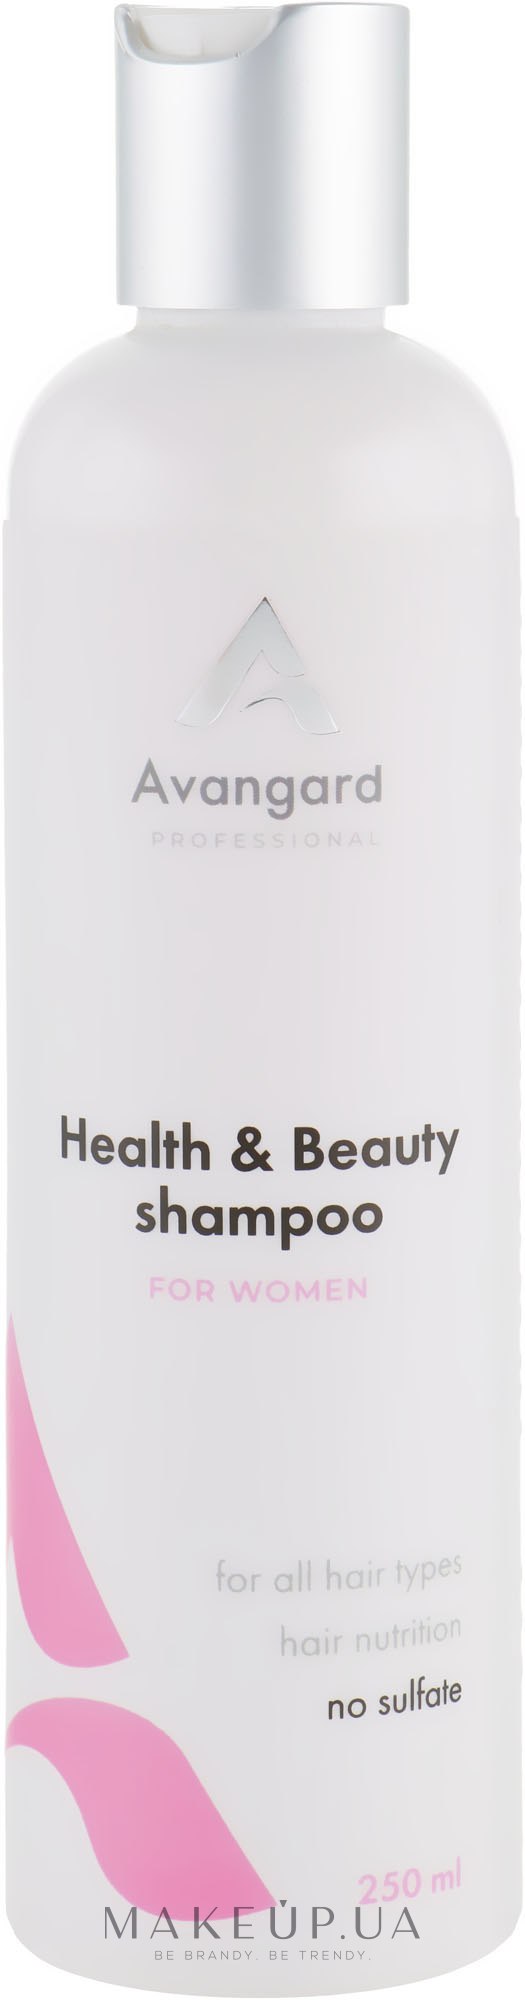 Професійний шампунь для щоденного догляду за жіночим волоссям - Avangard Professional Health & Beauty Shampoo — фото 250ml